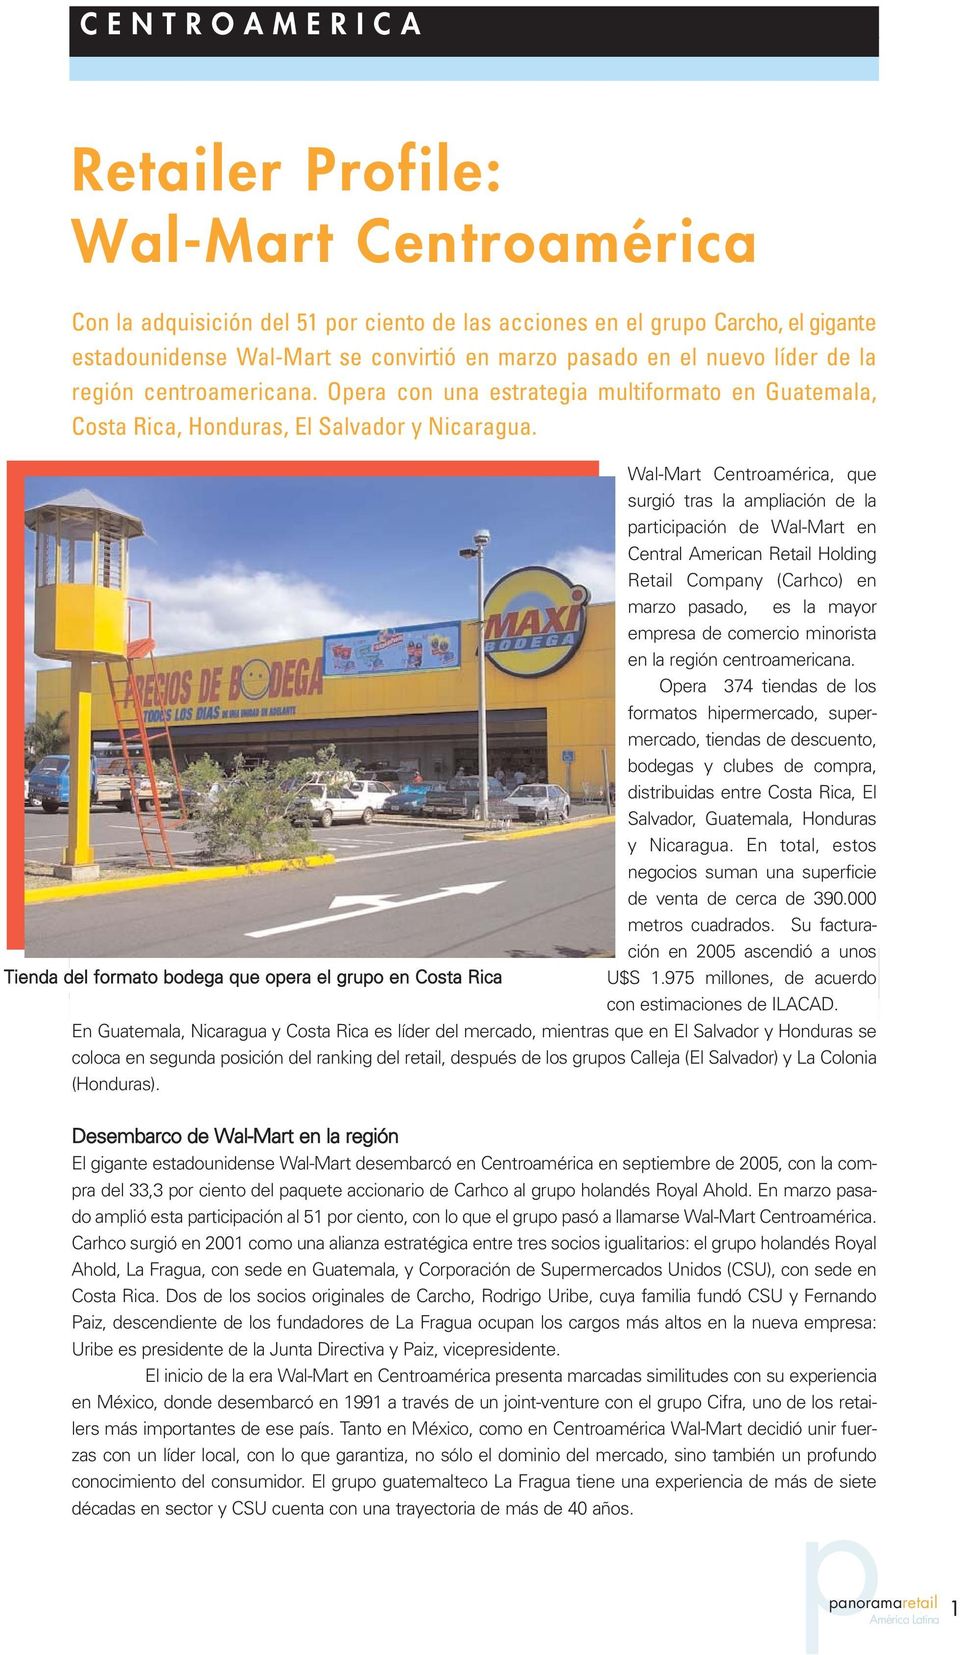 Wal-Mart Centroamérica, que surgió tras la ampliación de la participación de Wal-Mart en Central American Retail Holding Retail Company (Carhco) en marzo pasado, es la mayor empresa de comercio